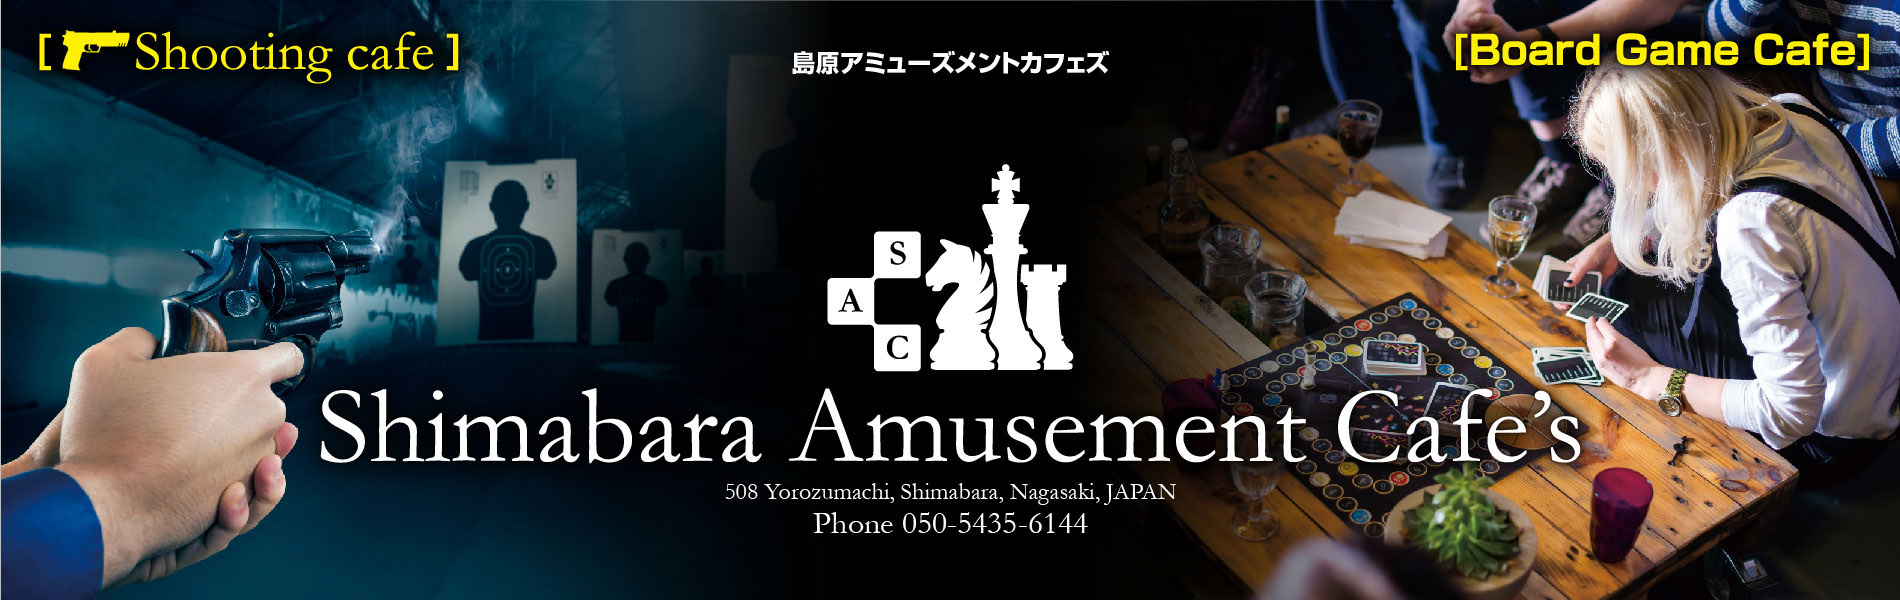 Shimabara Amusement Cafe's